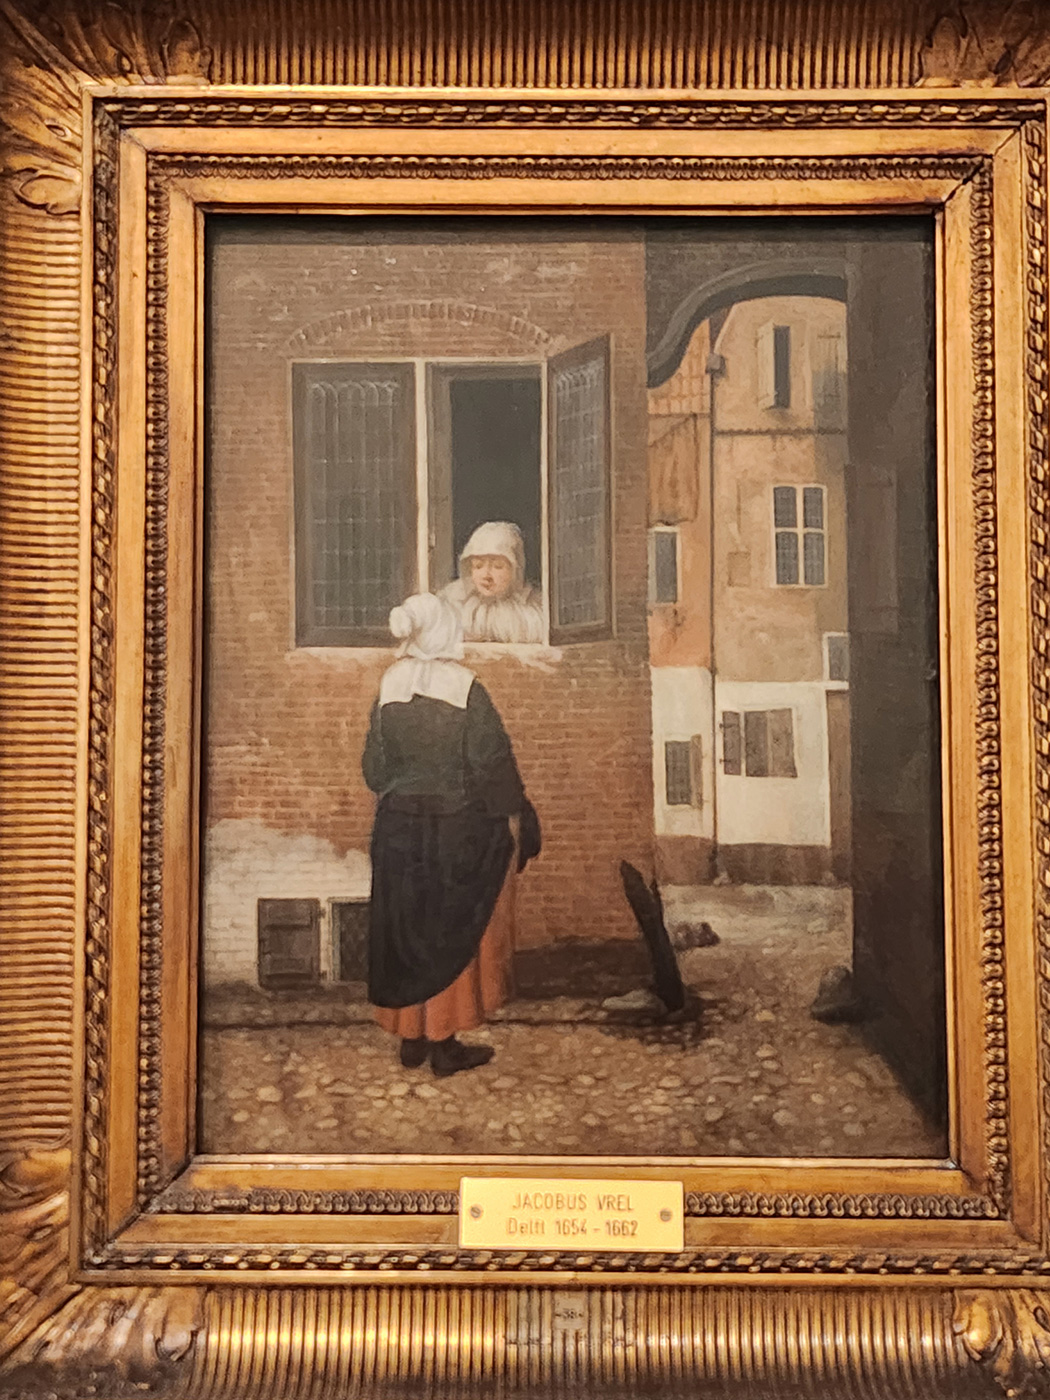 Deux femmes conversant par une fenêtre. Huile sur panneau 35,7 x 28,2cm. Worms Museum Heylshof. Achetée et présente dans le catalogue de l’œuvre de Vermeer dans la gazette des Beaux-Arts de 1866. Même datation du panneau provenant du même arbre que la scène de rue précédente.